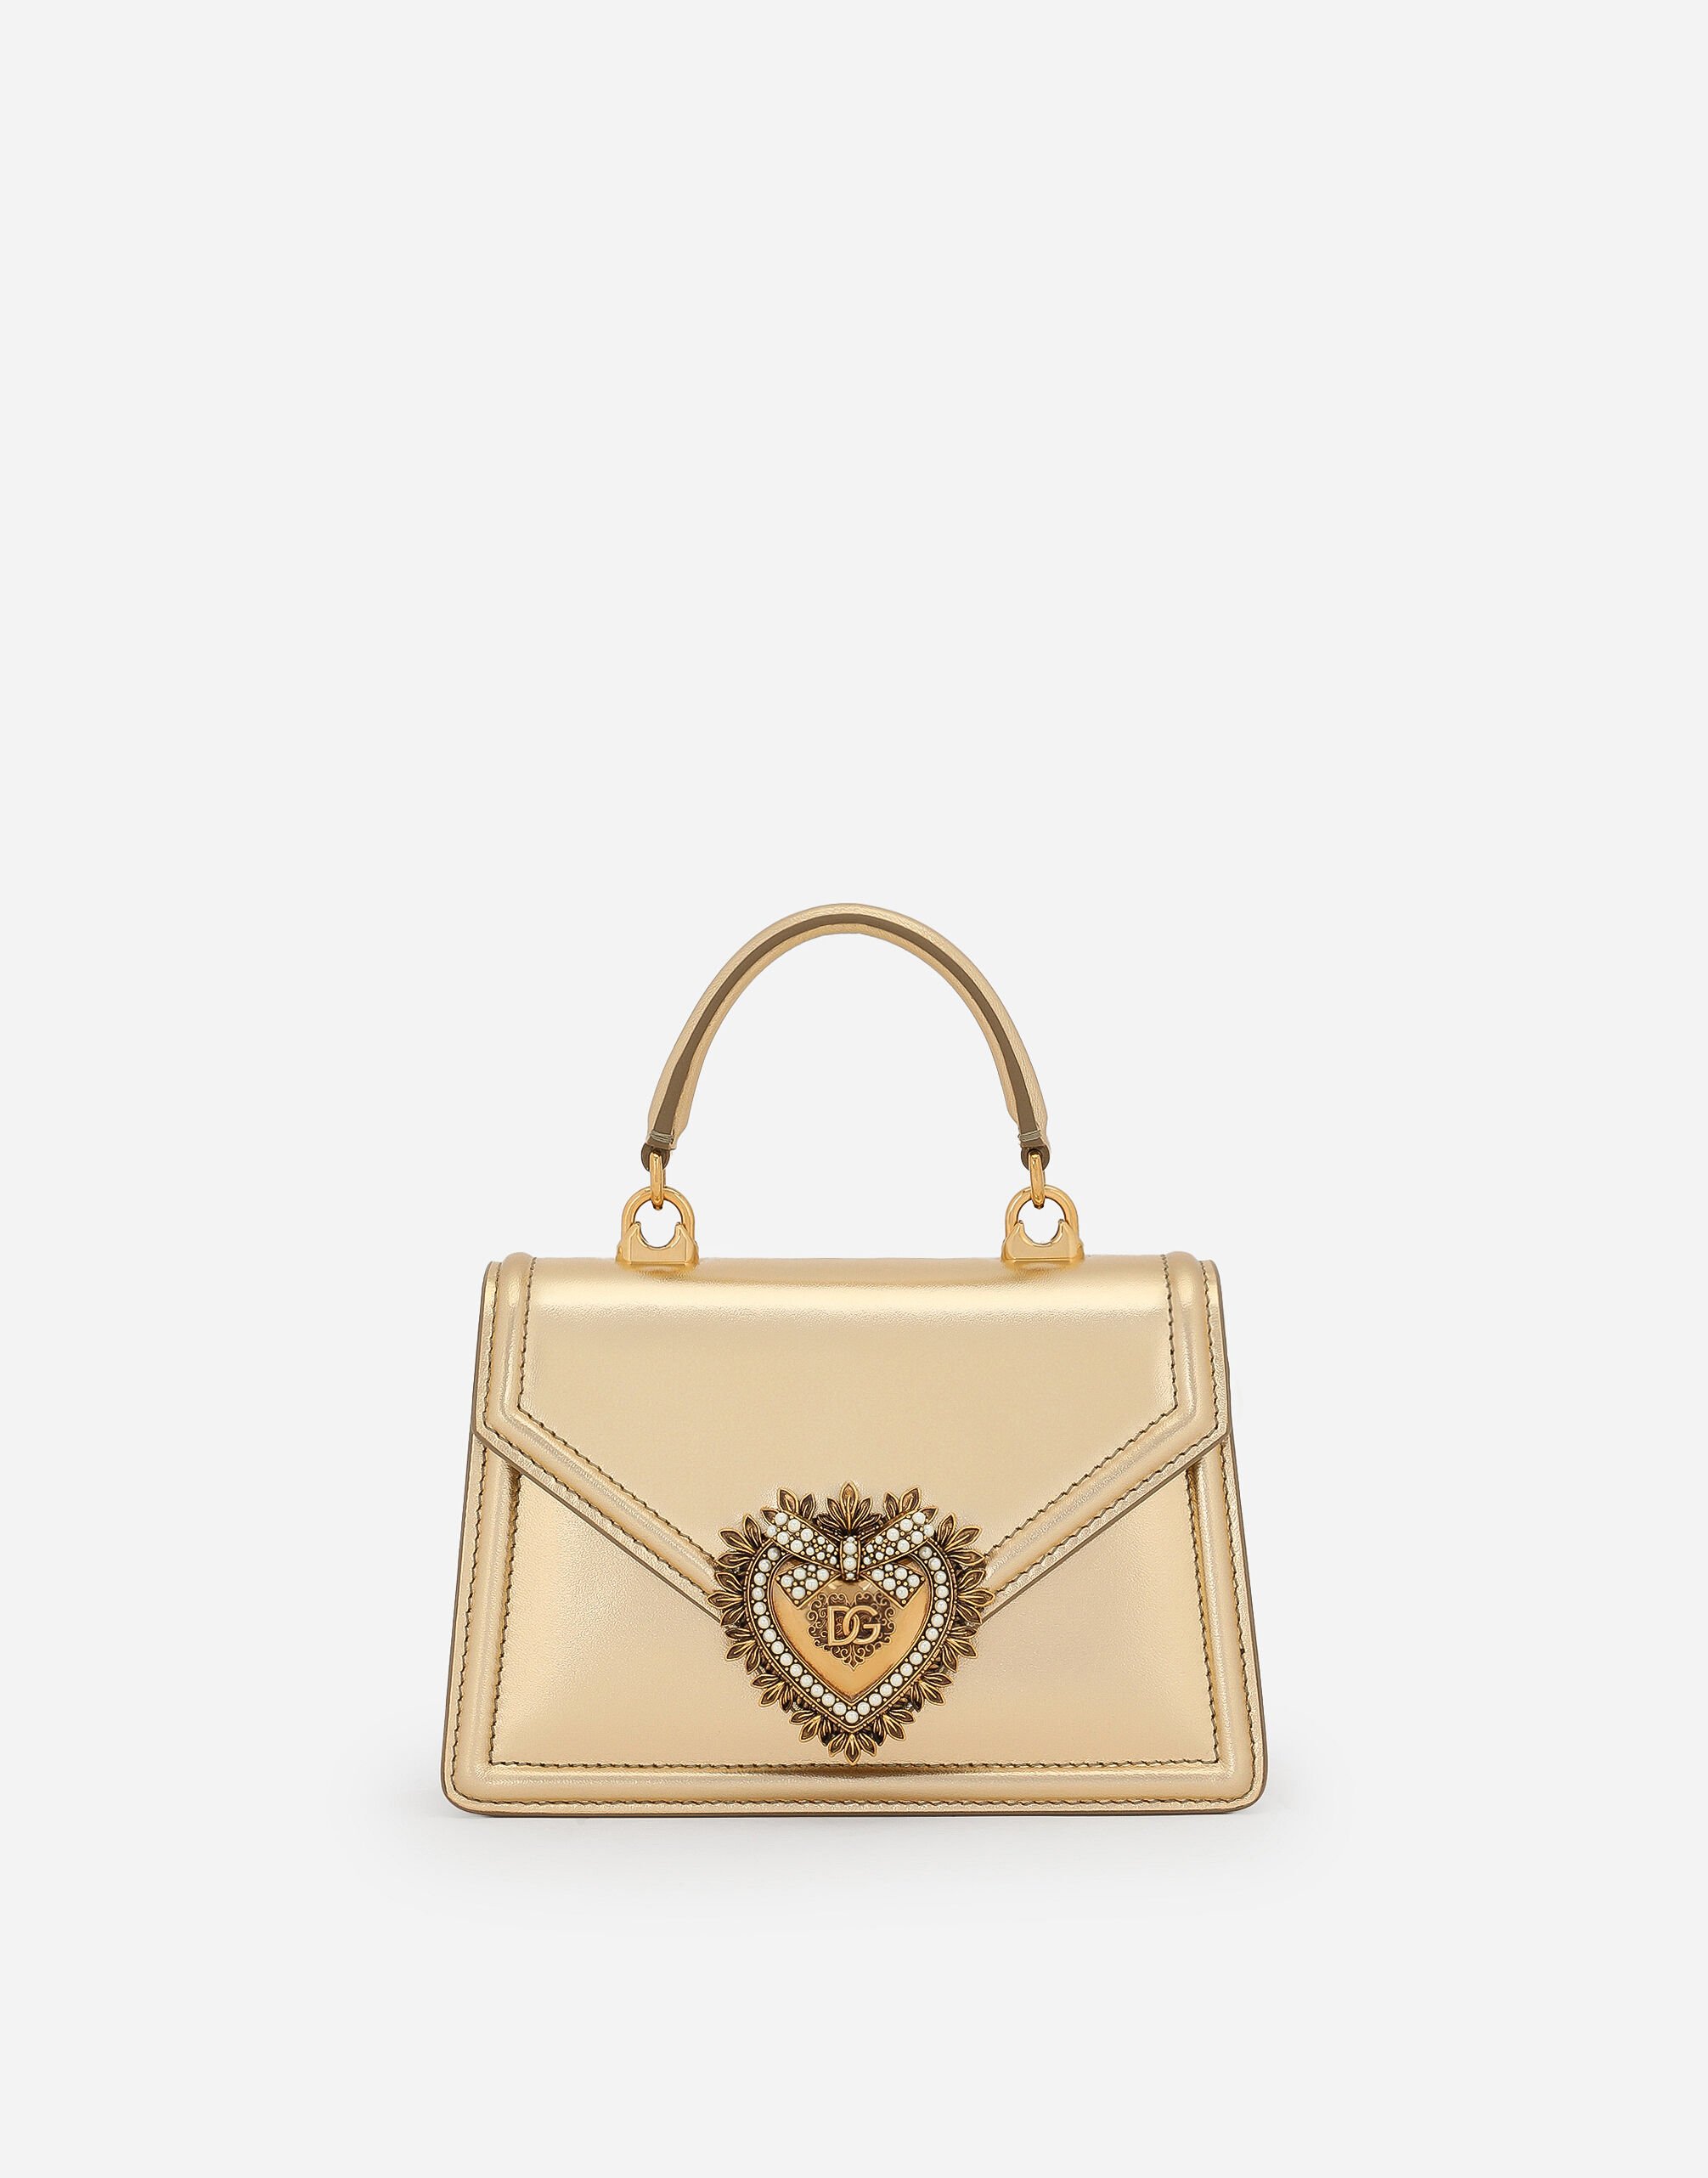 Dolce & Gabbana Small Devotion bag in nappa mordore leather Denim BB6498AO621